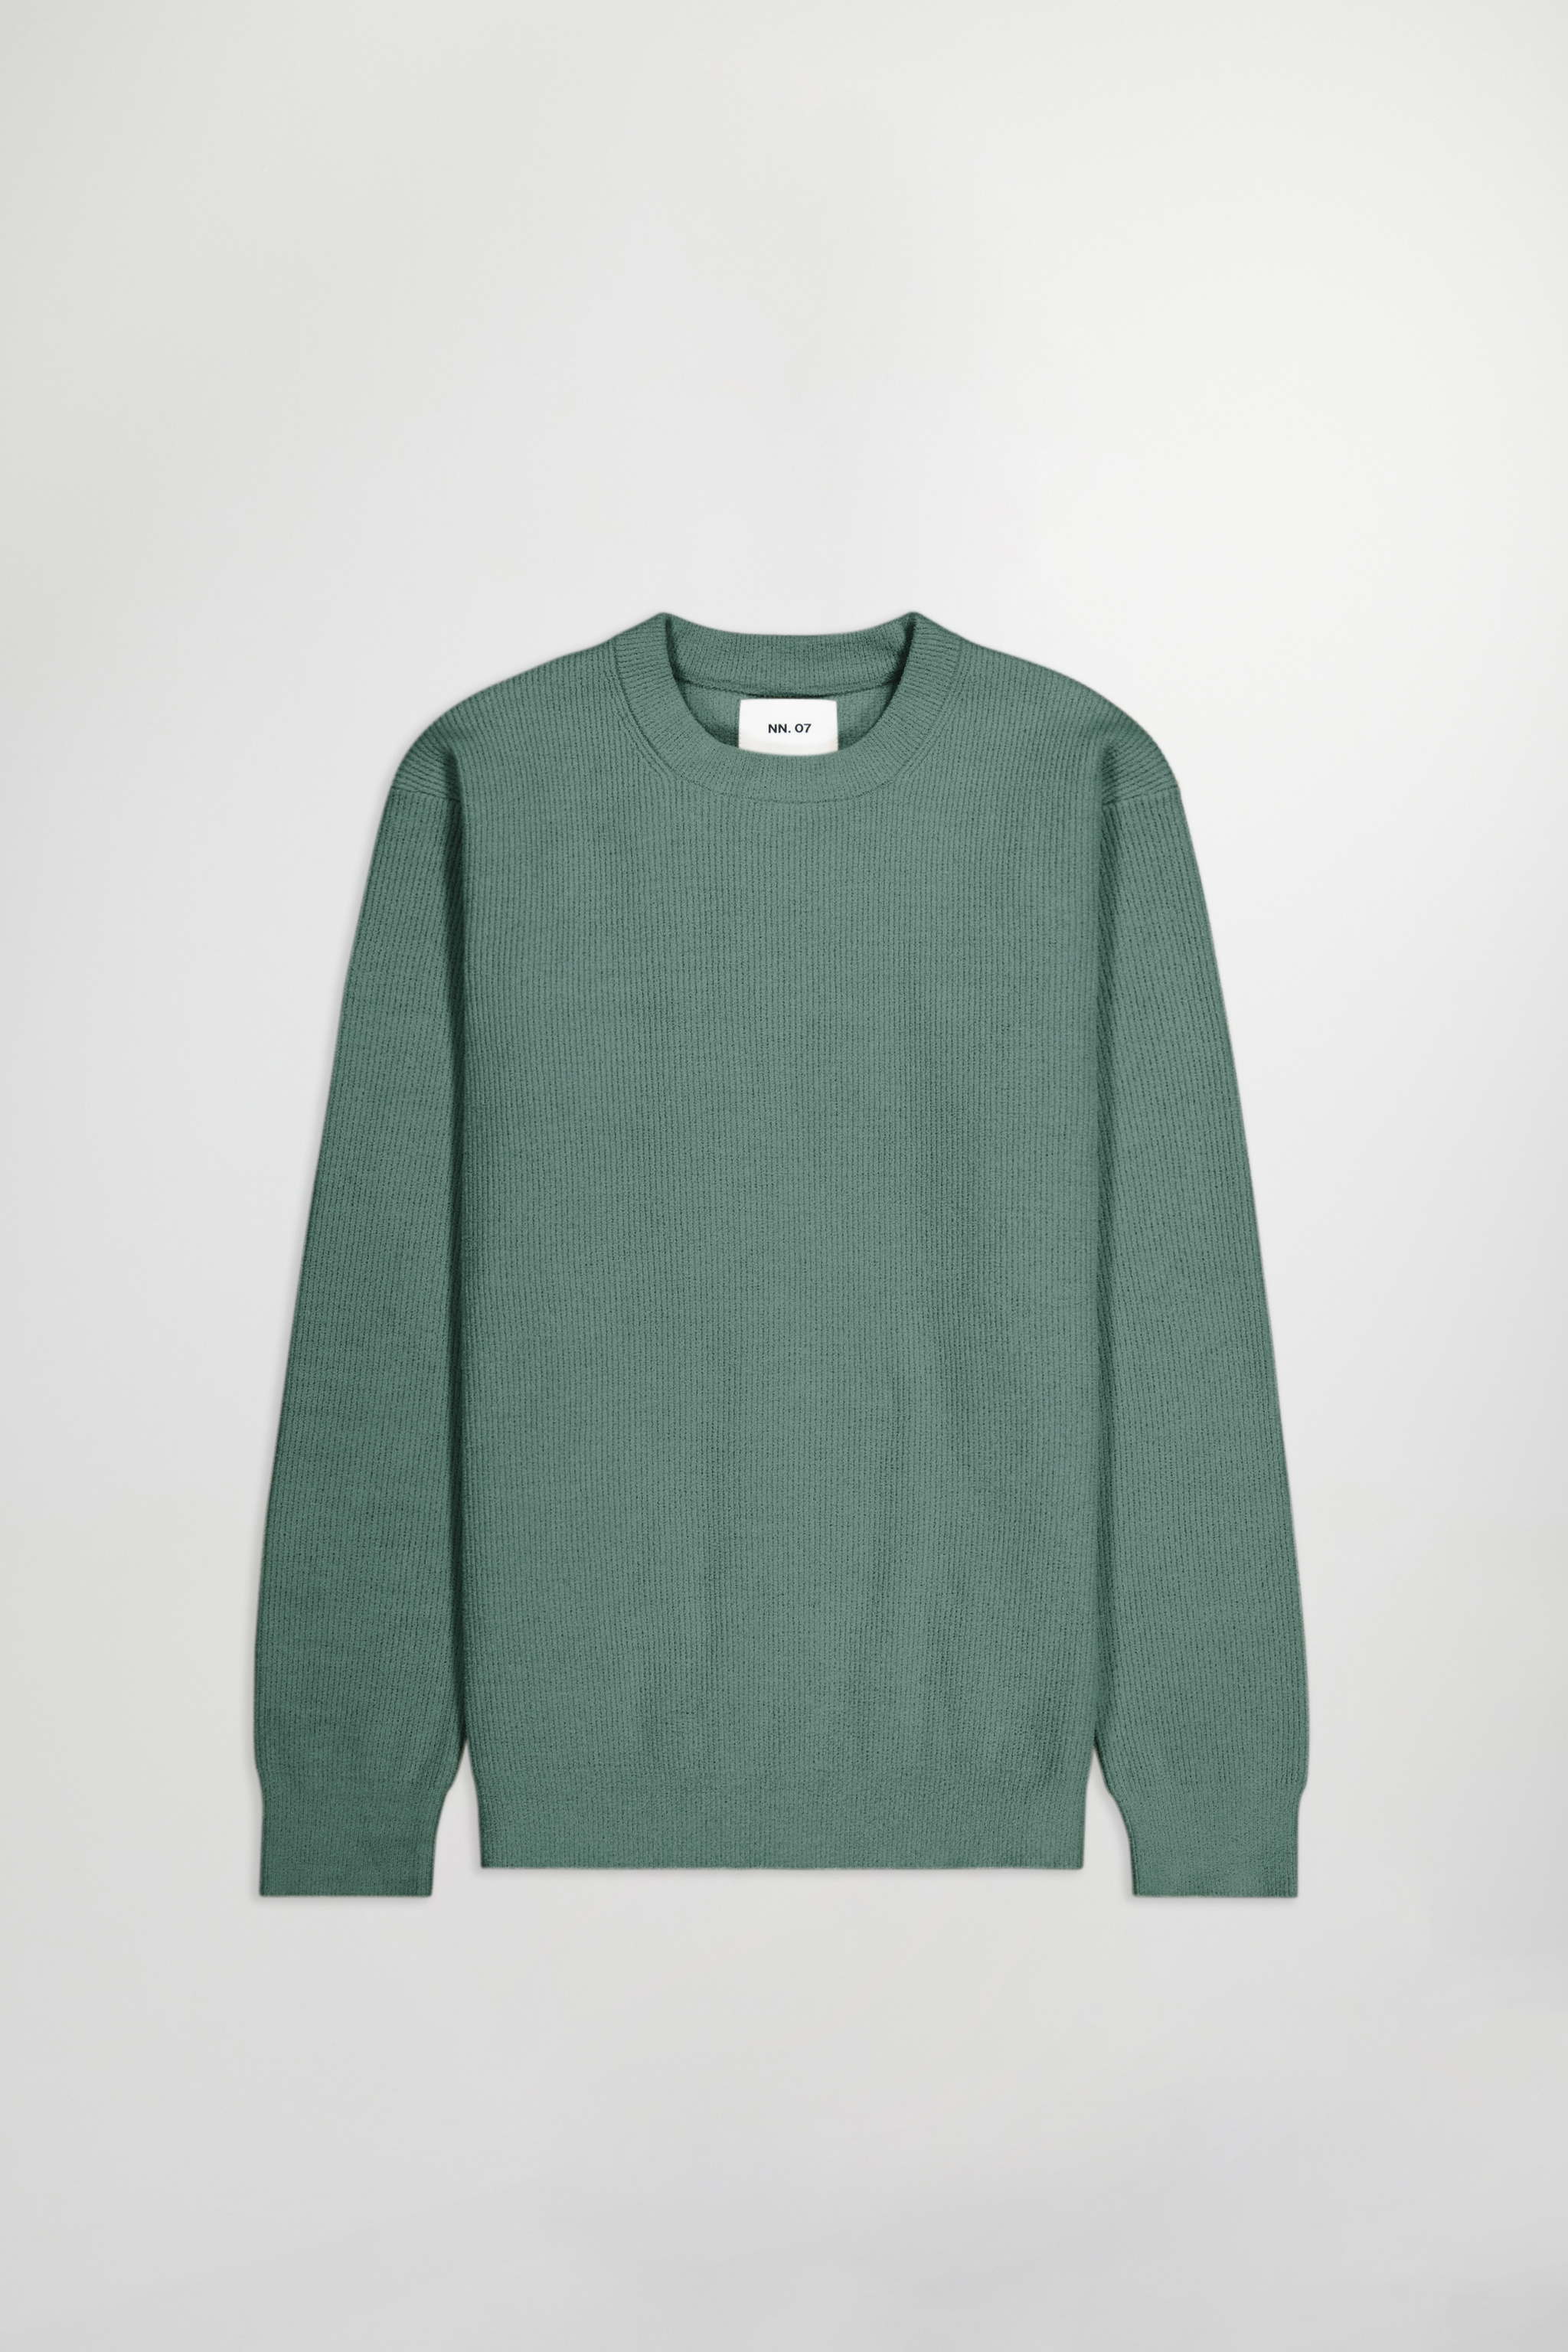 Danny 6429 men's sweater - Grey - Buy online at NN.07®